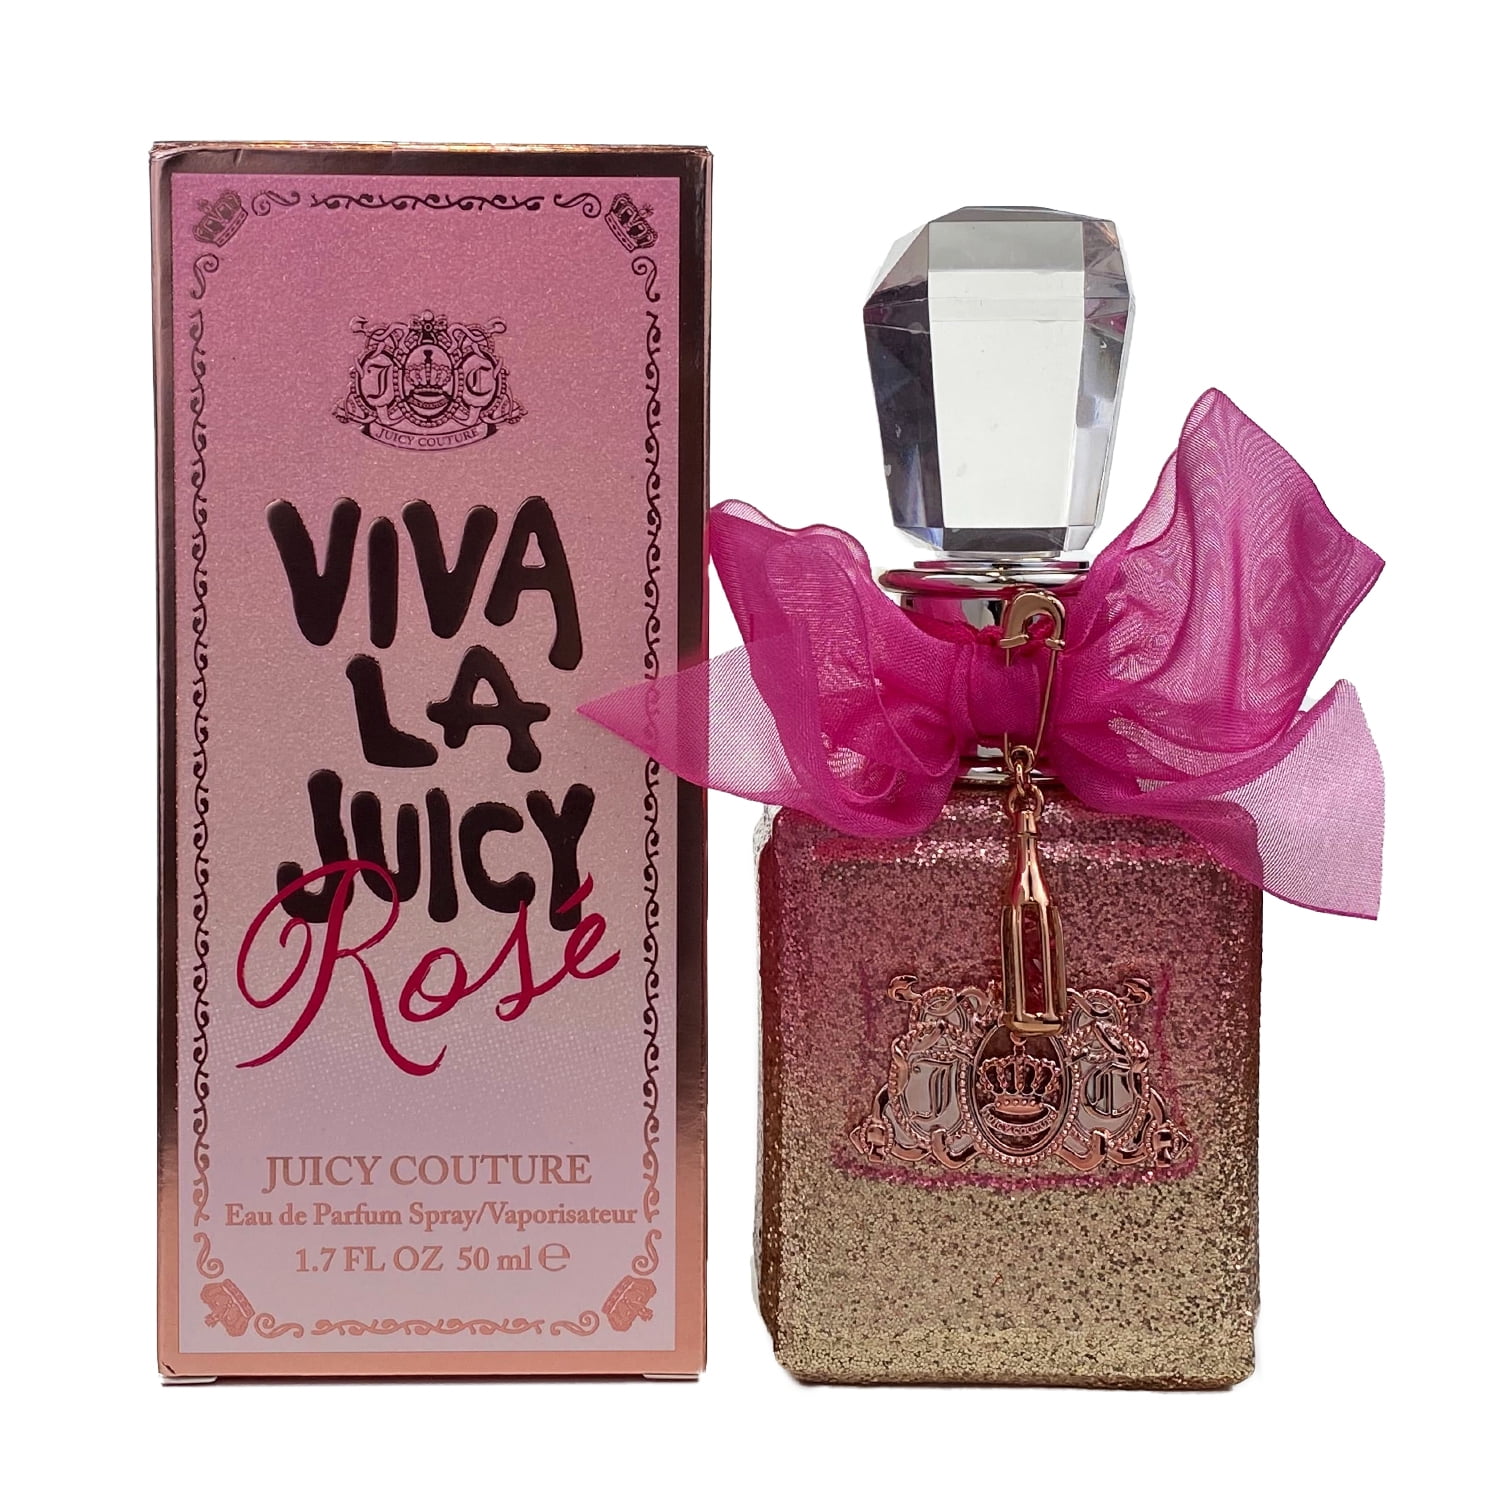 Juicy Couture - Viva La Juicy Rose Eau De Parfum 1.7 Oz / 50 Ml - Spray